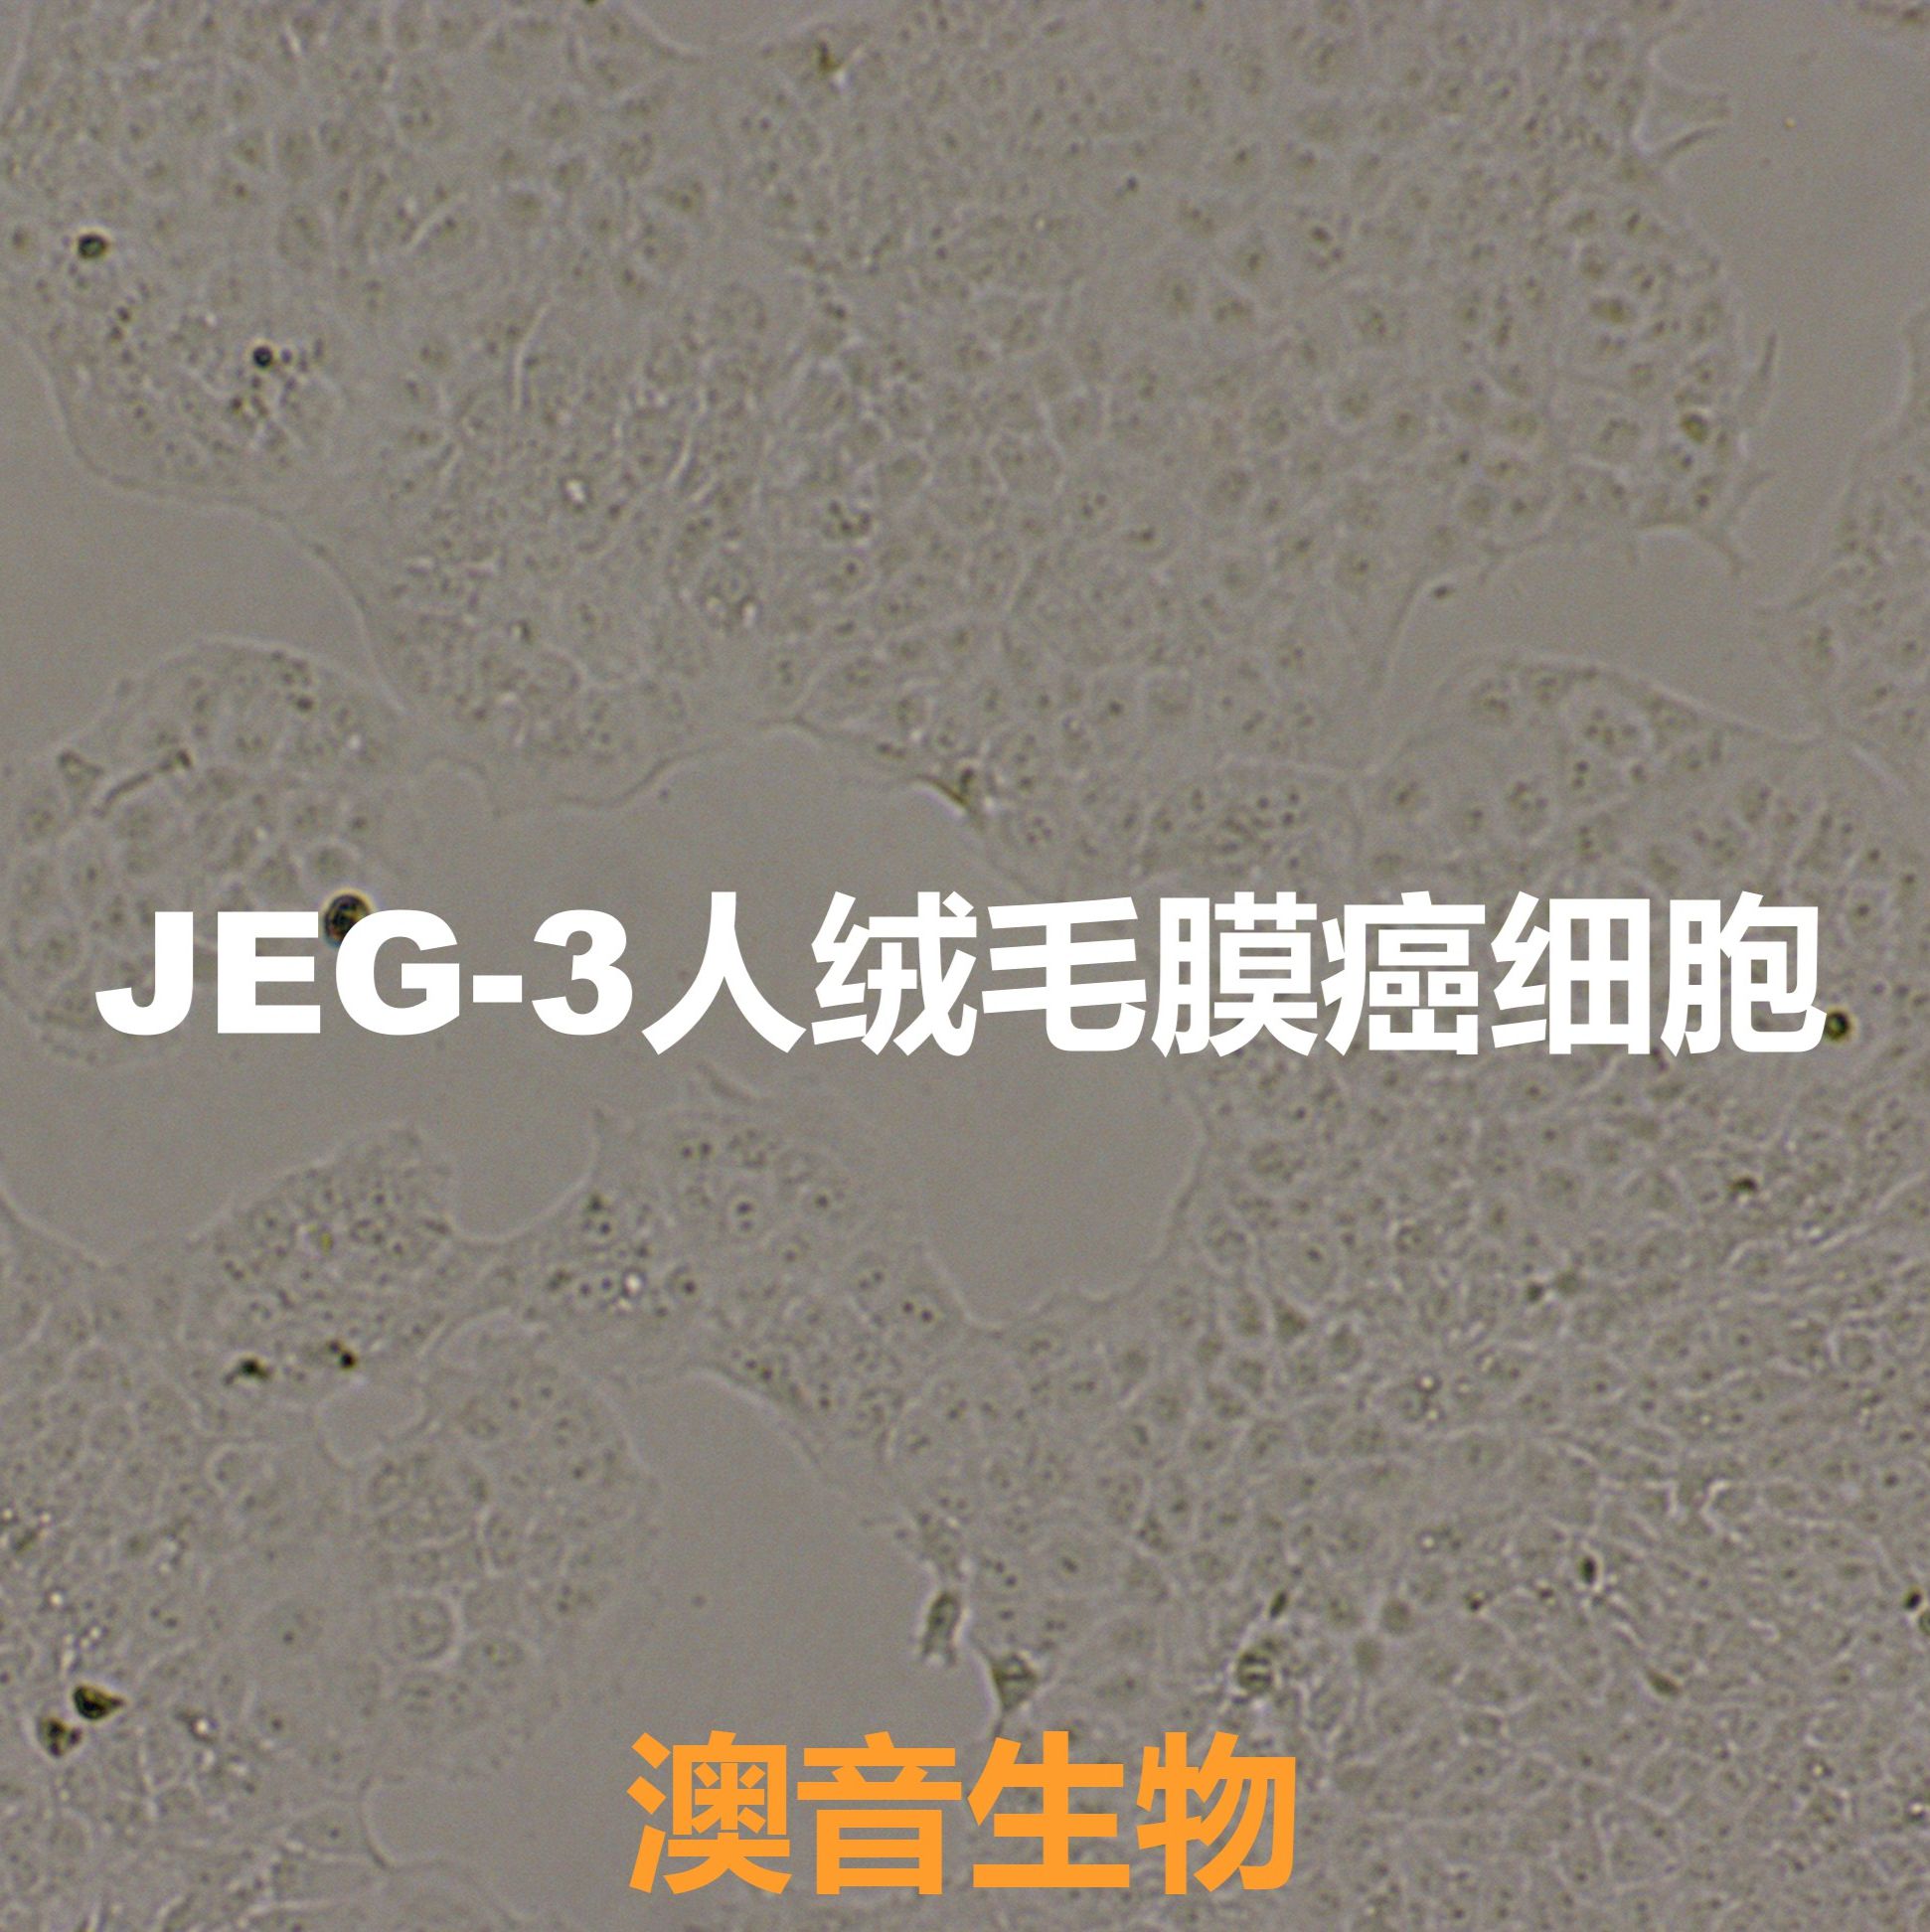 JEG-3[Jeg-3; JEG3; Jeg3; jeg3]绒毛膜癌细胞